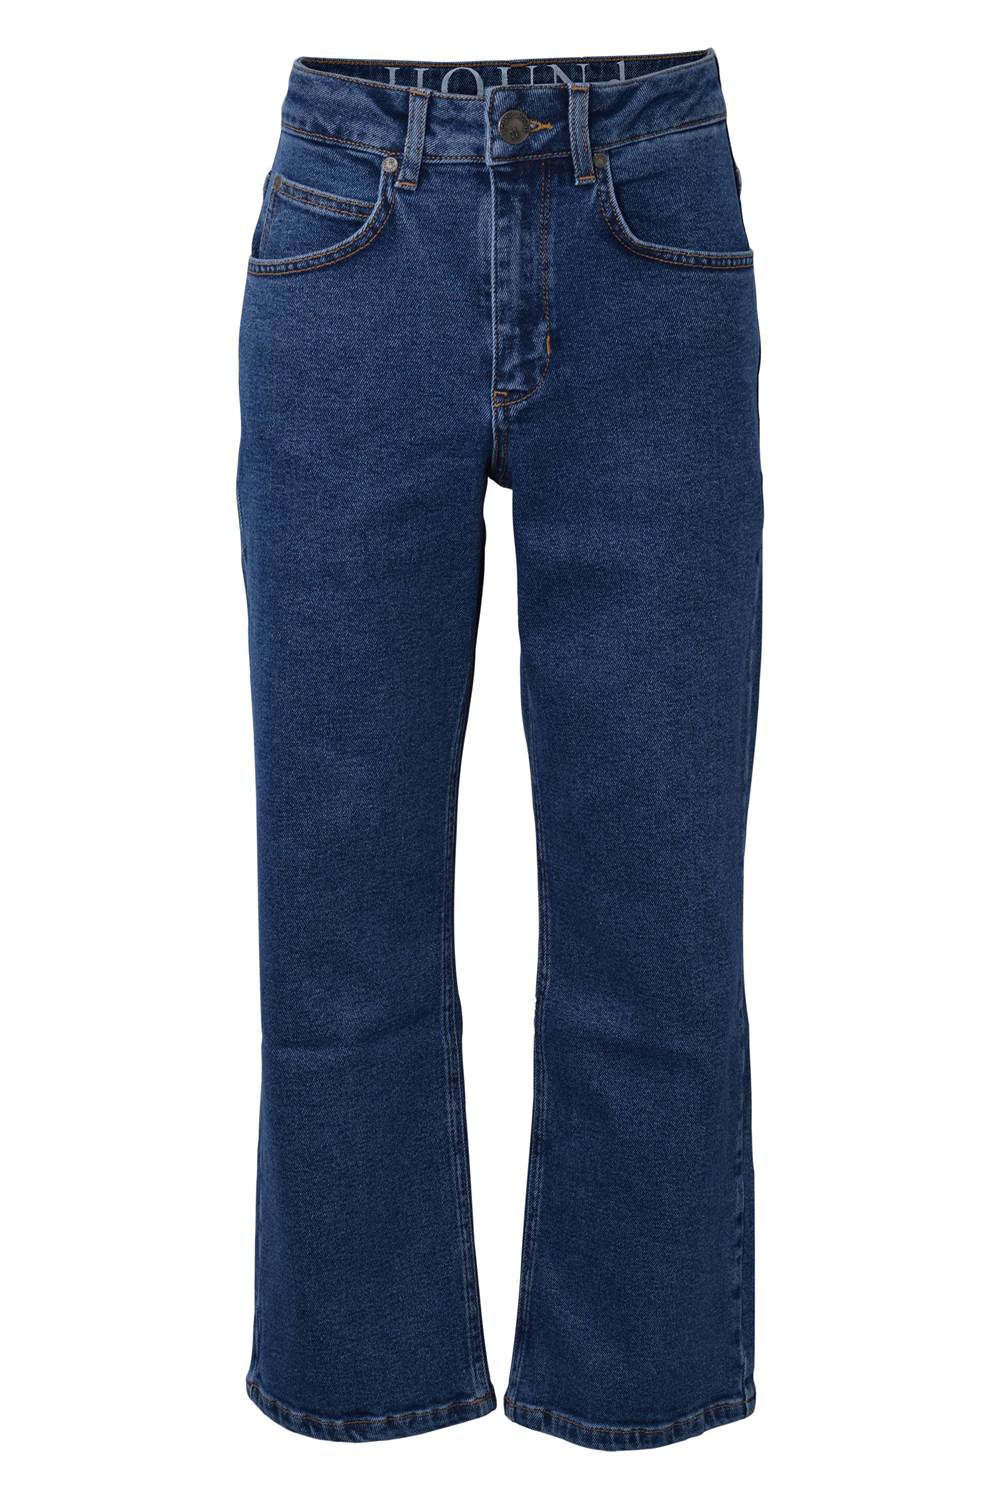 Anoi metrisk grænse Køb Hound jeans - wide/blå (dreng)